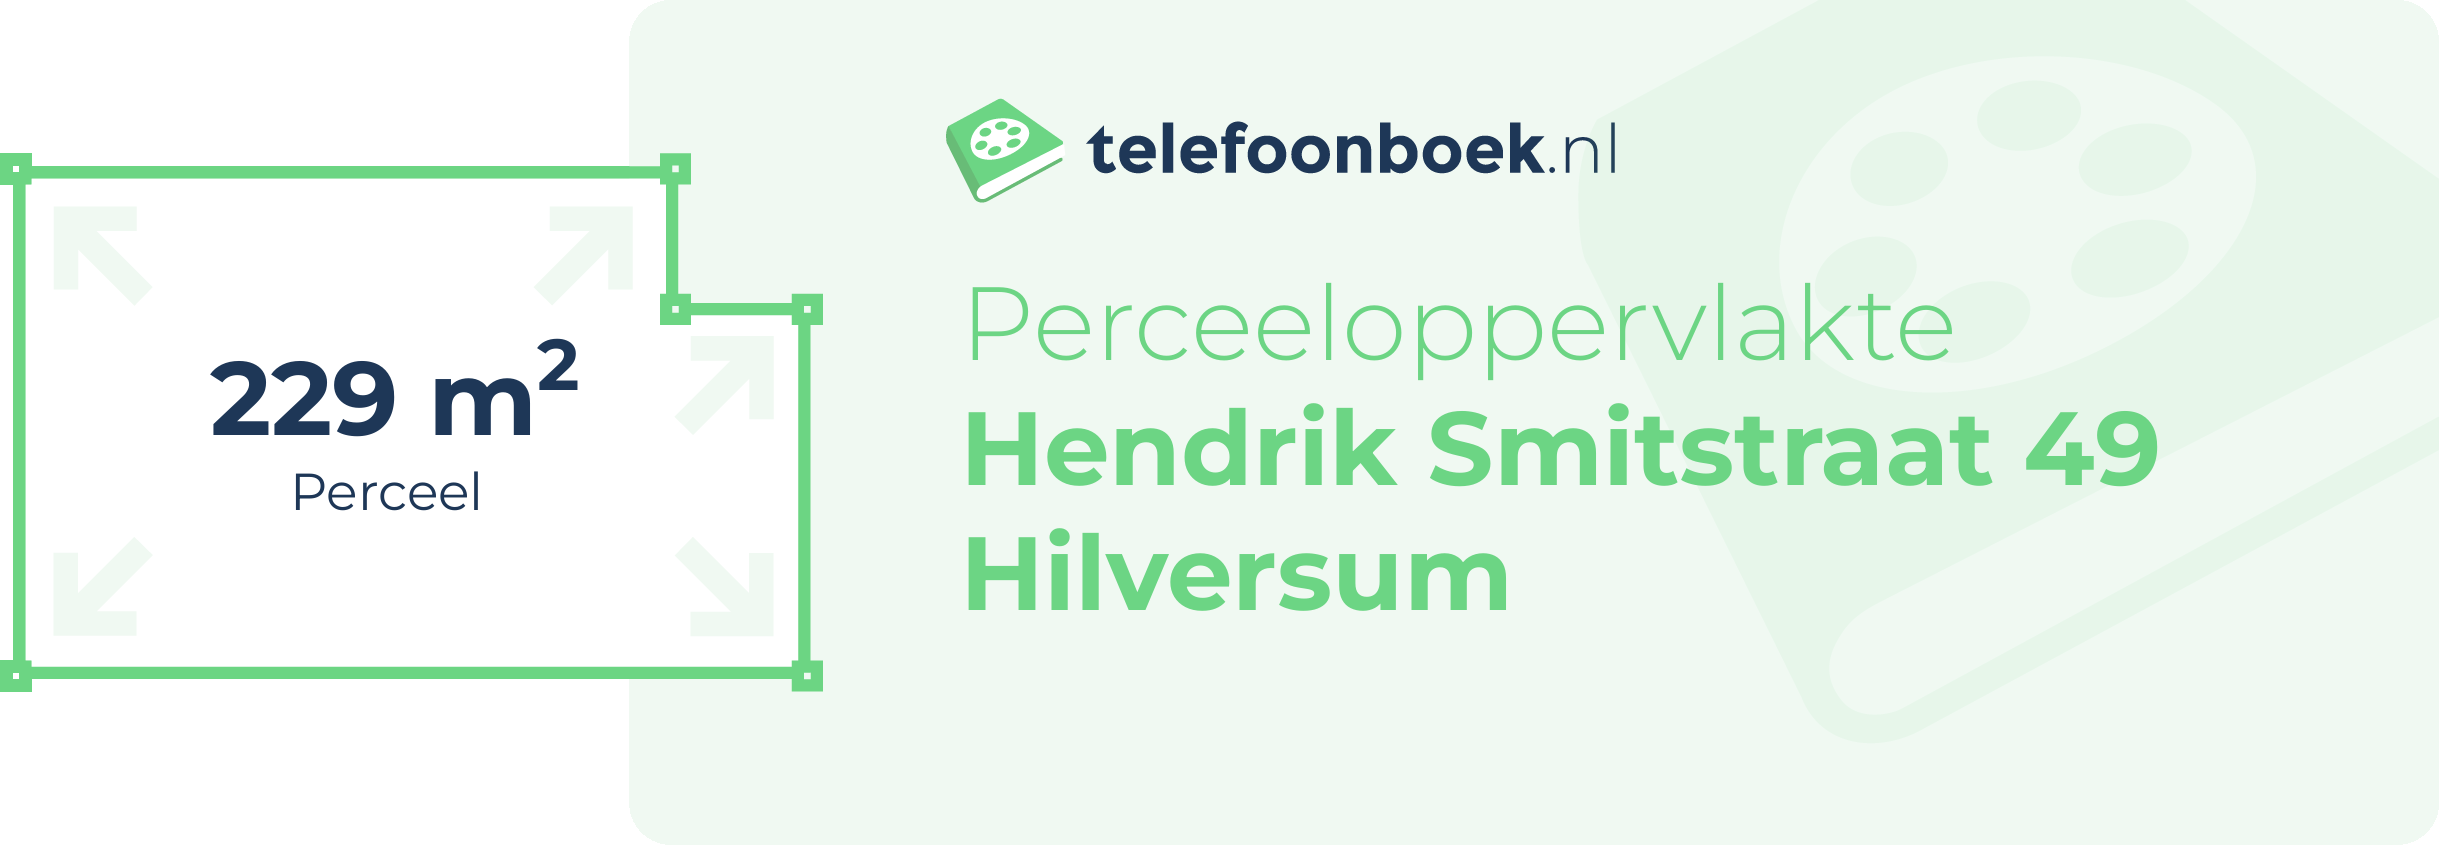 Perceeloppervlakte Hendrik Smitstraat 49 Hilversum